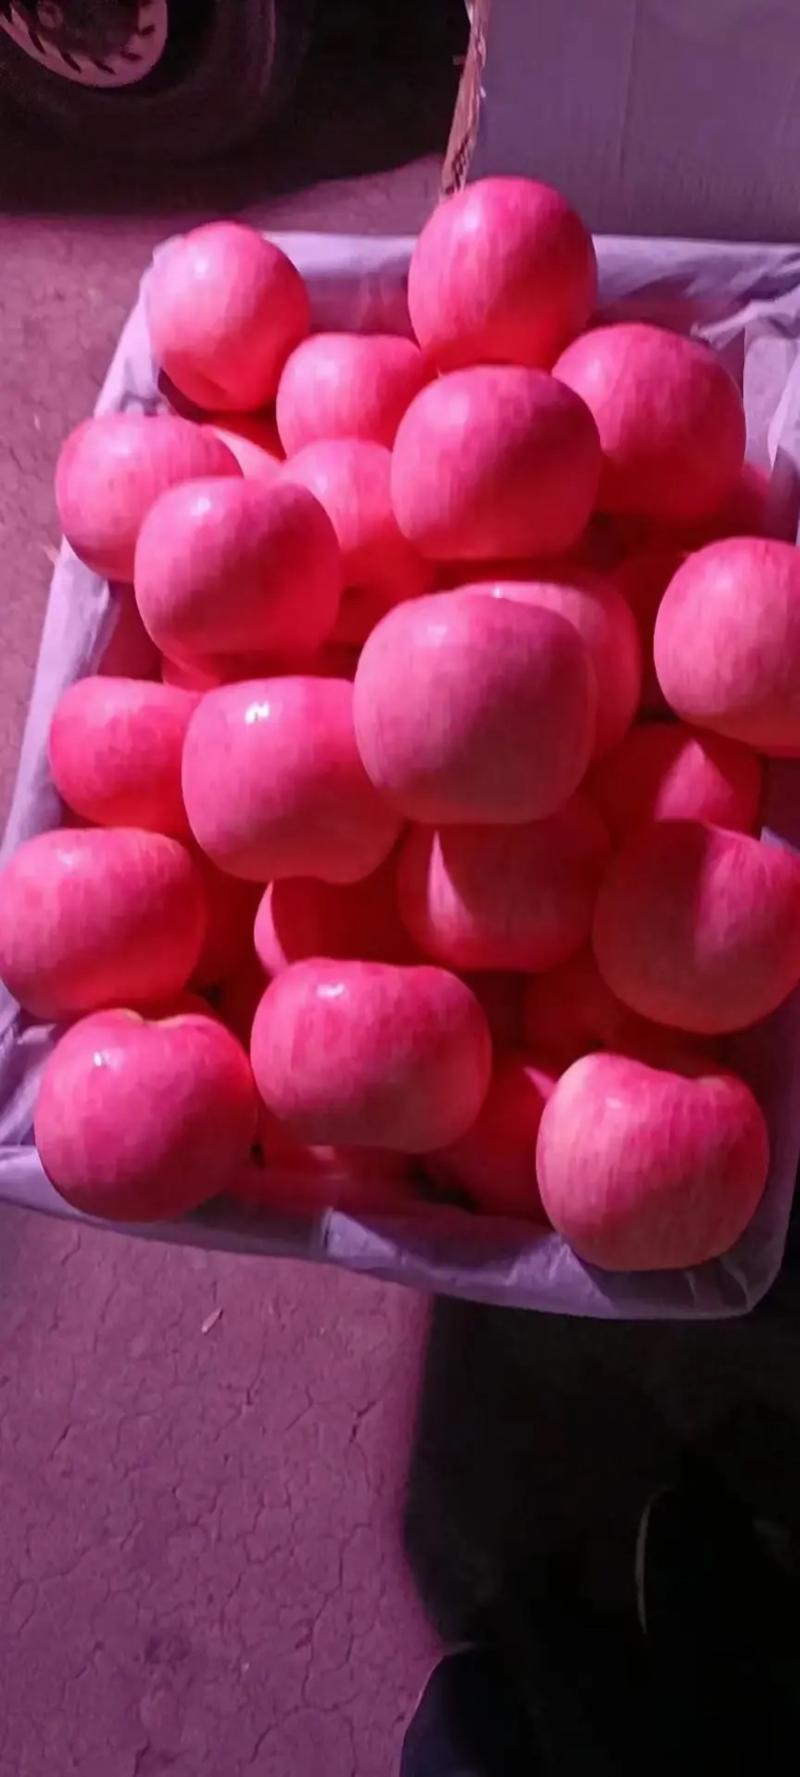 【优质苹果】山东精品红富士苹果产地一手货源批发